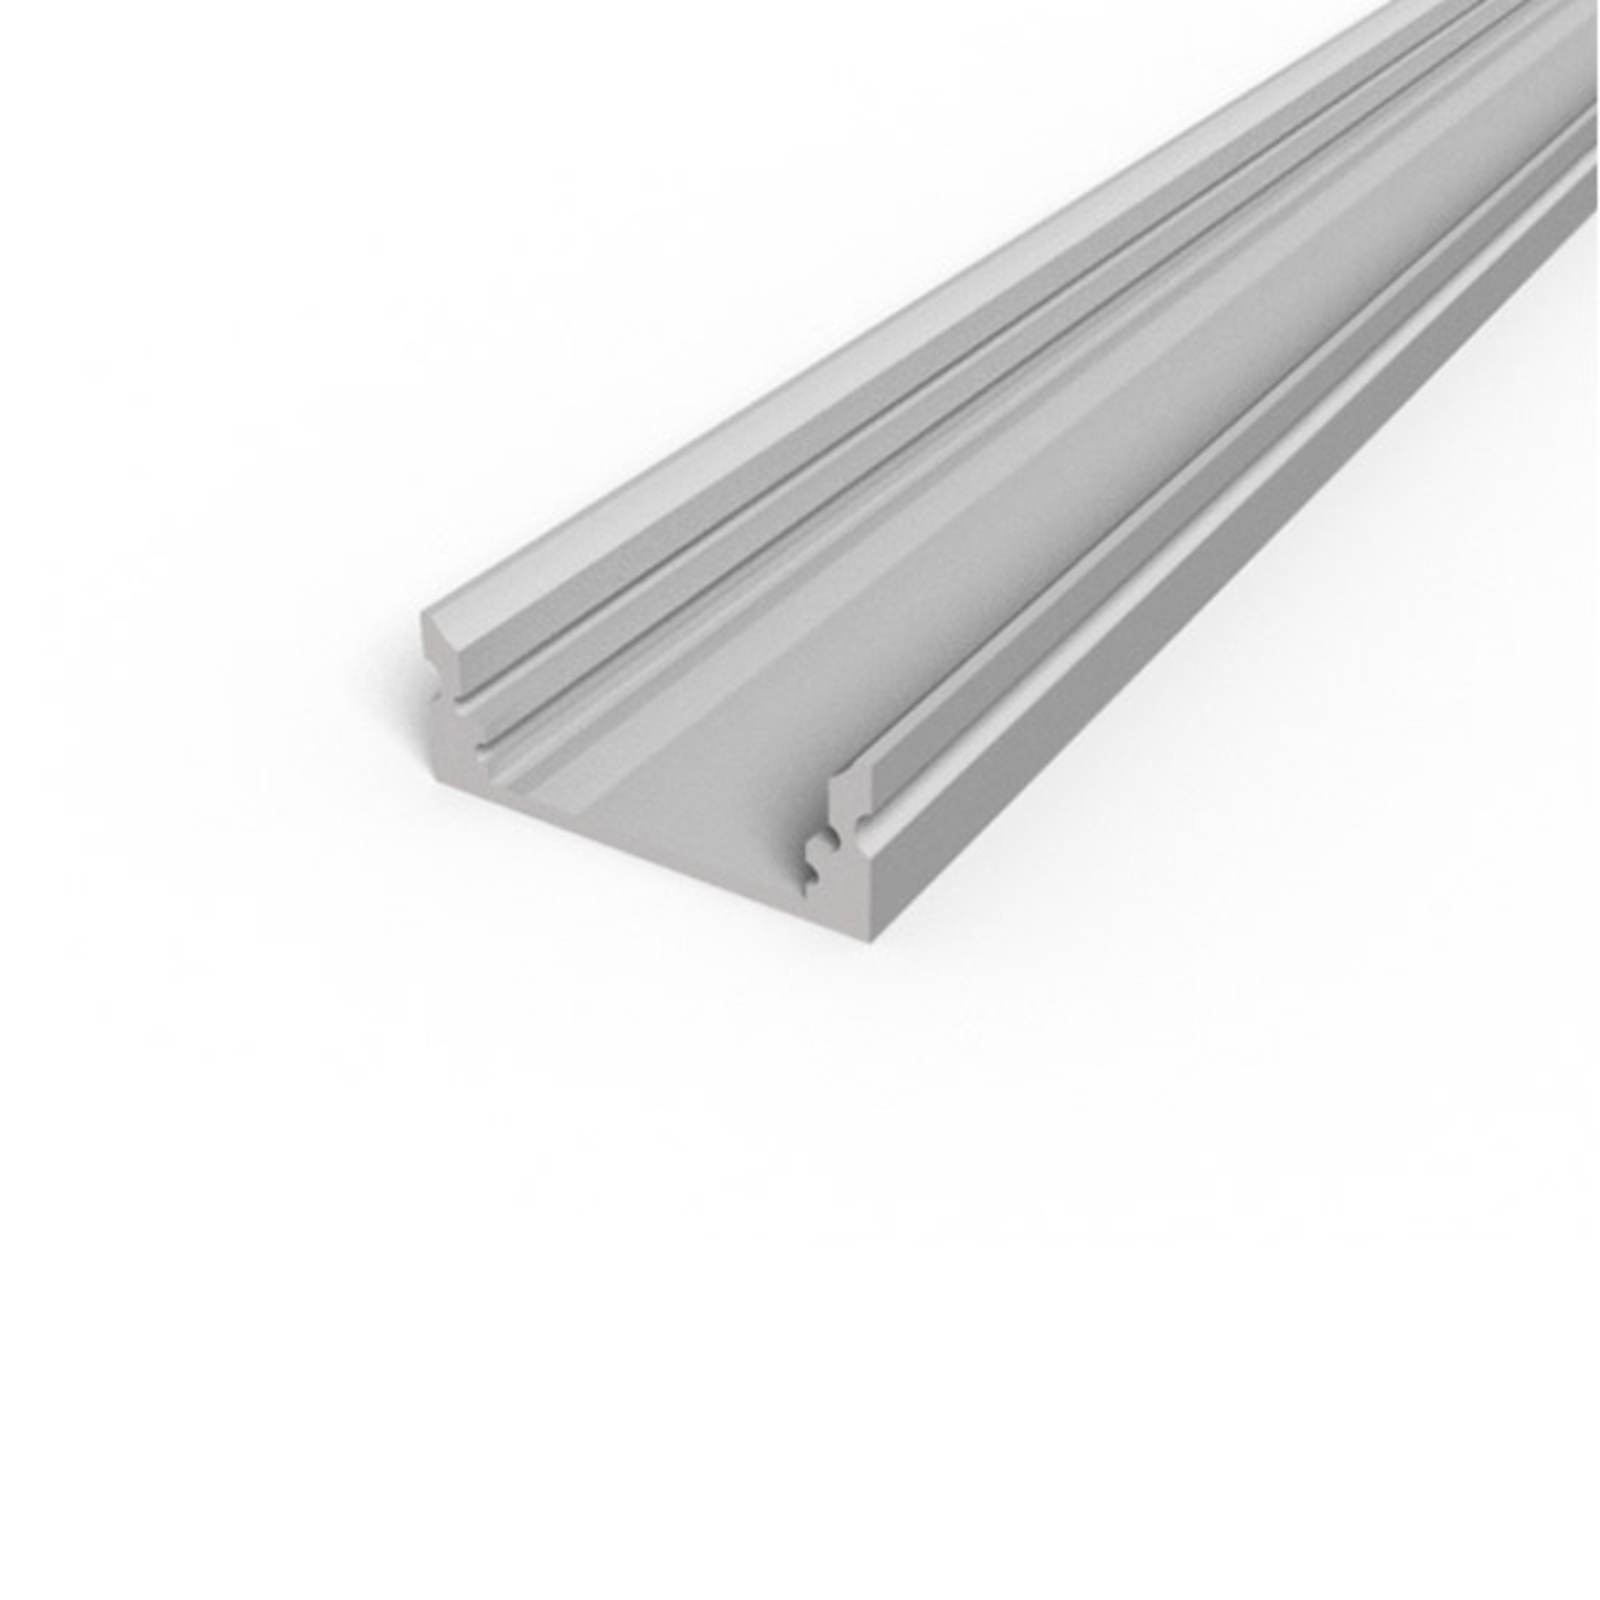 BRUMBERG surface-mounted aluminium profile set for LED strips